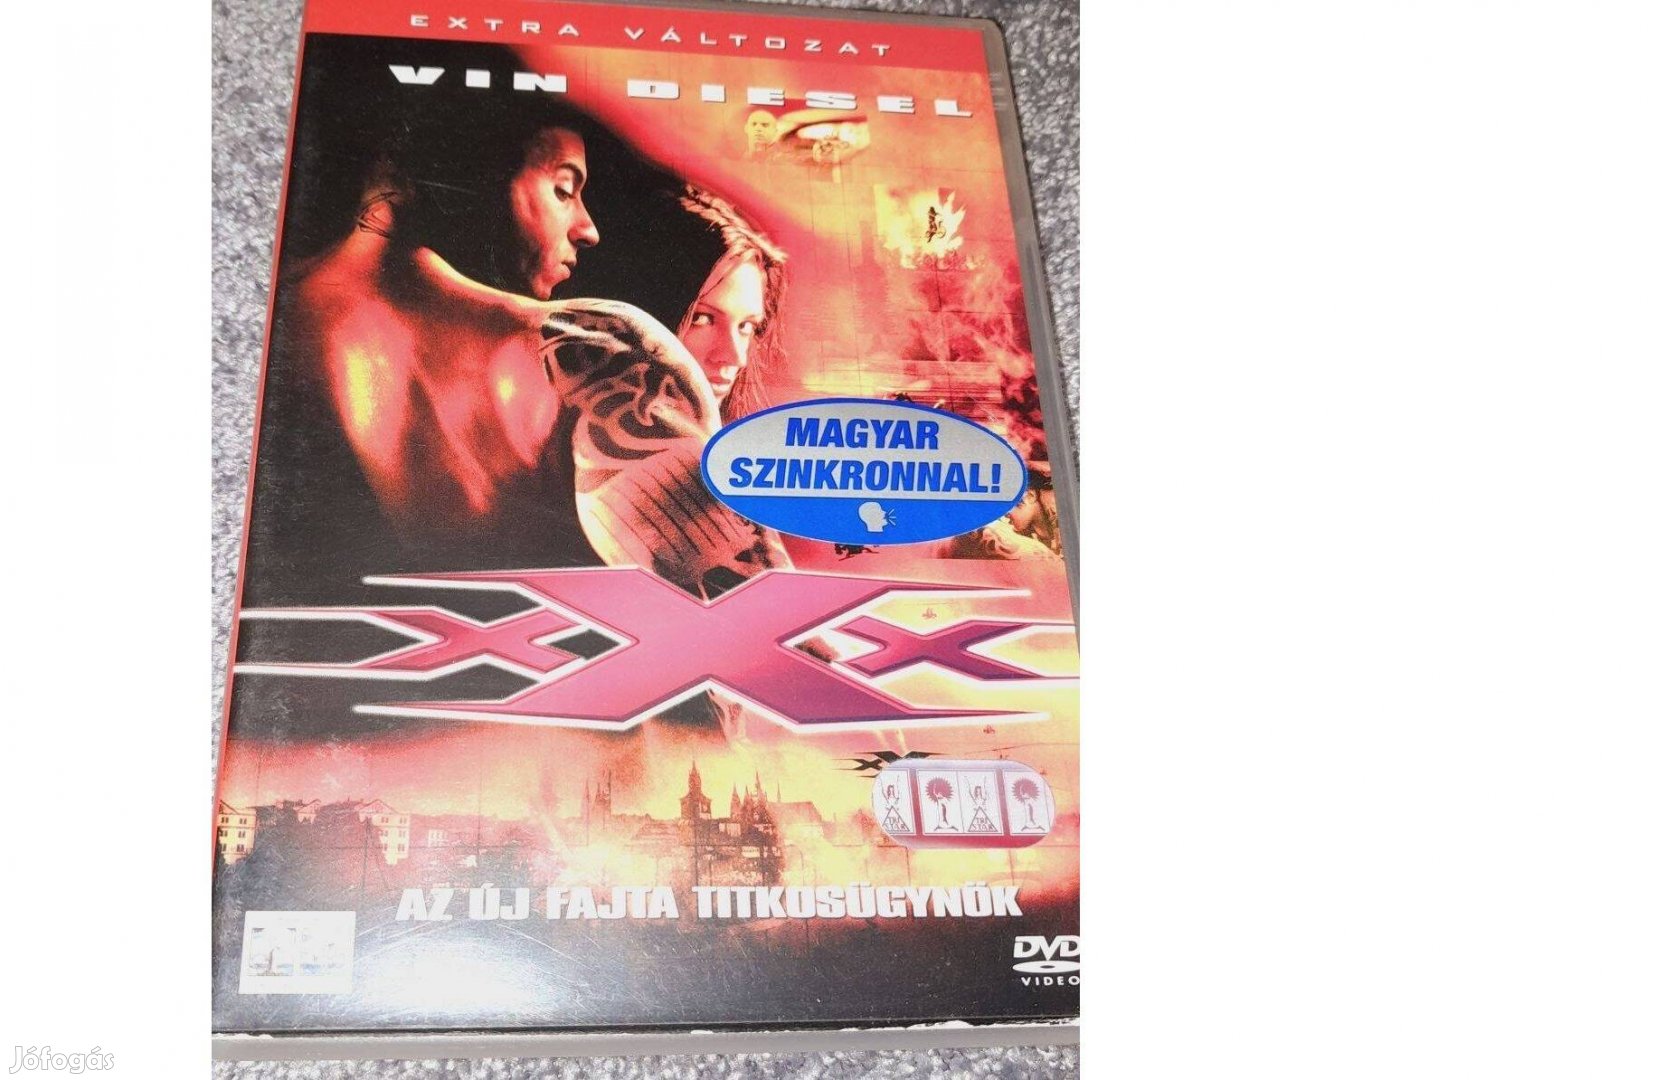 XXx - Az új fajta titkosügynök DVD (2002) Szinkronizált karcmentes